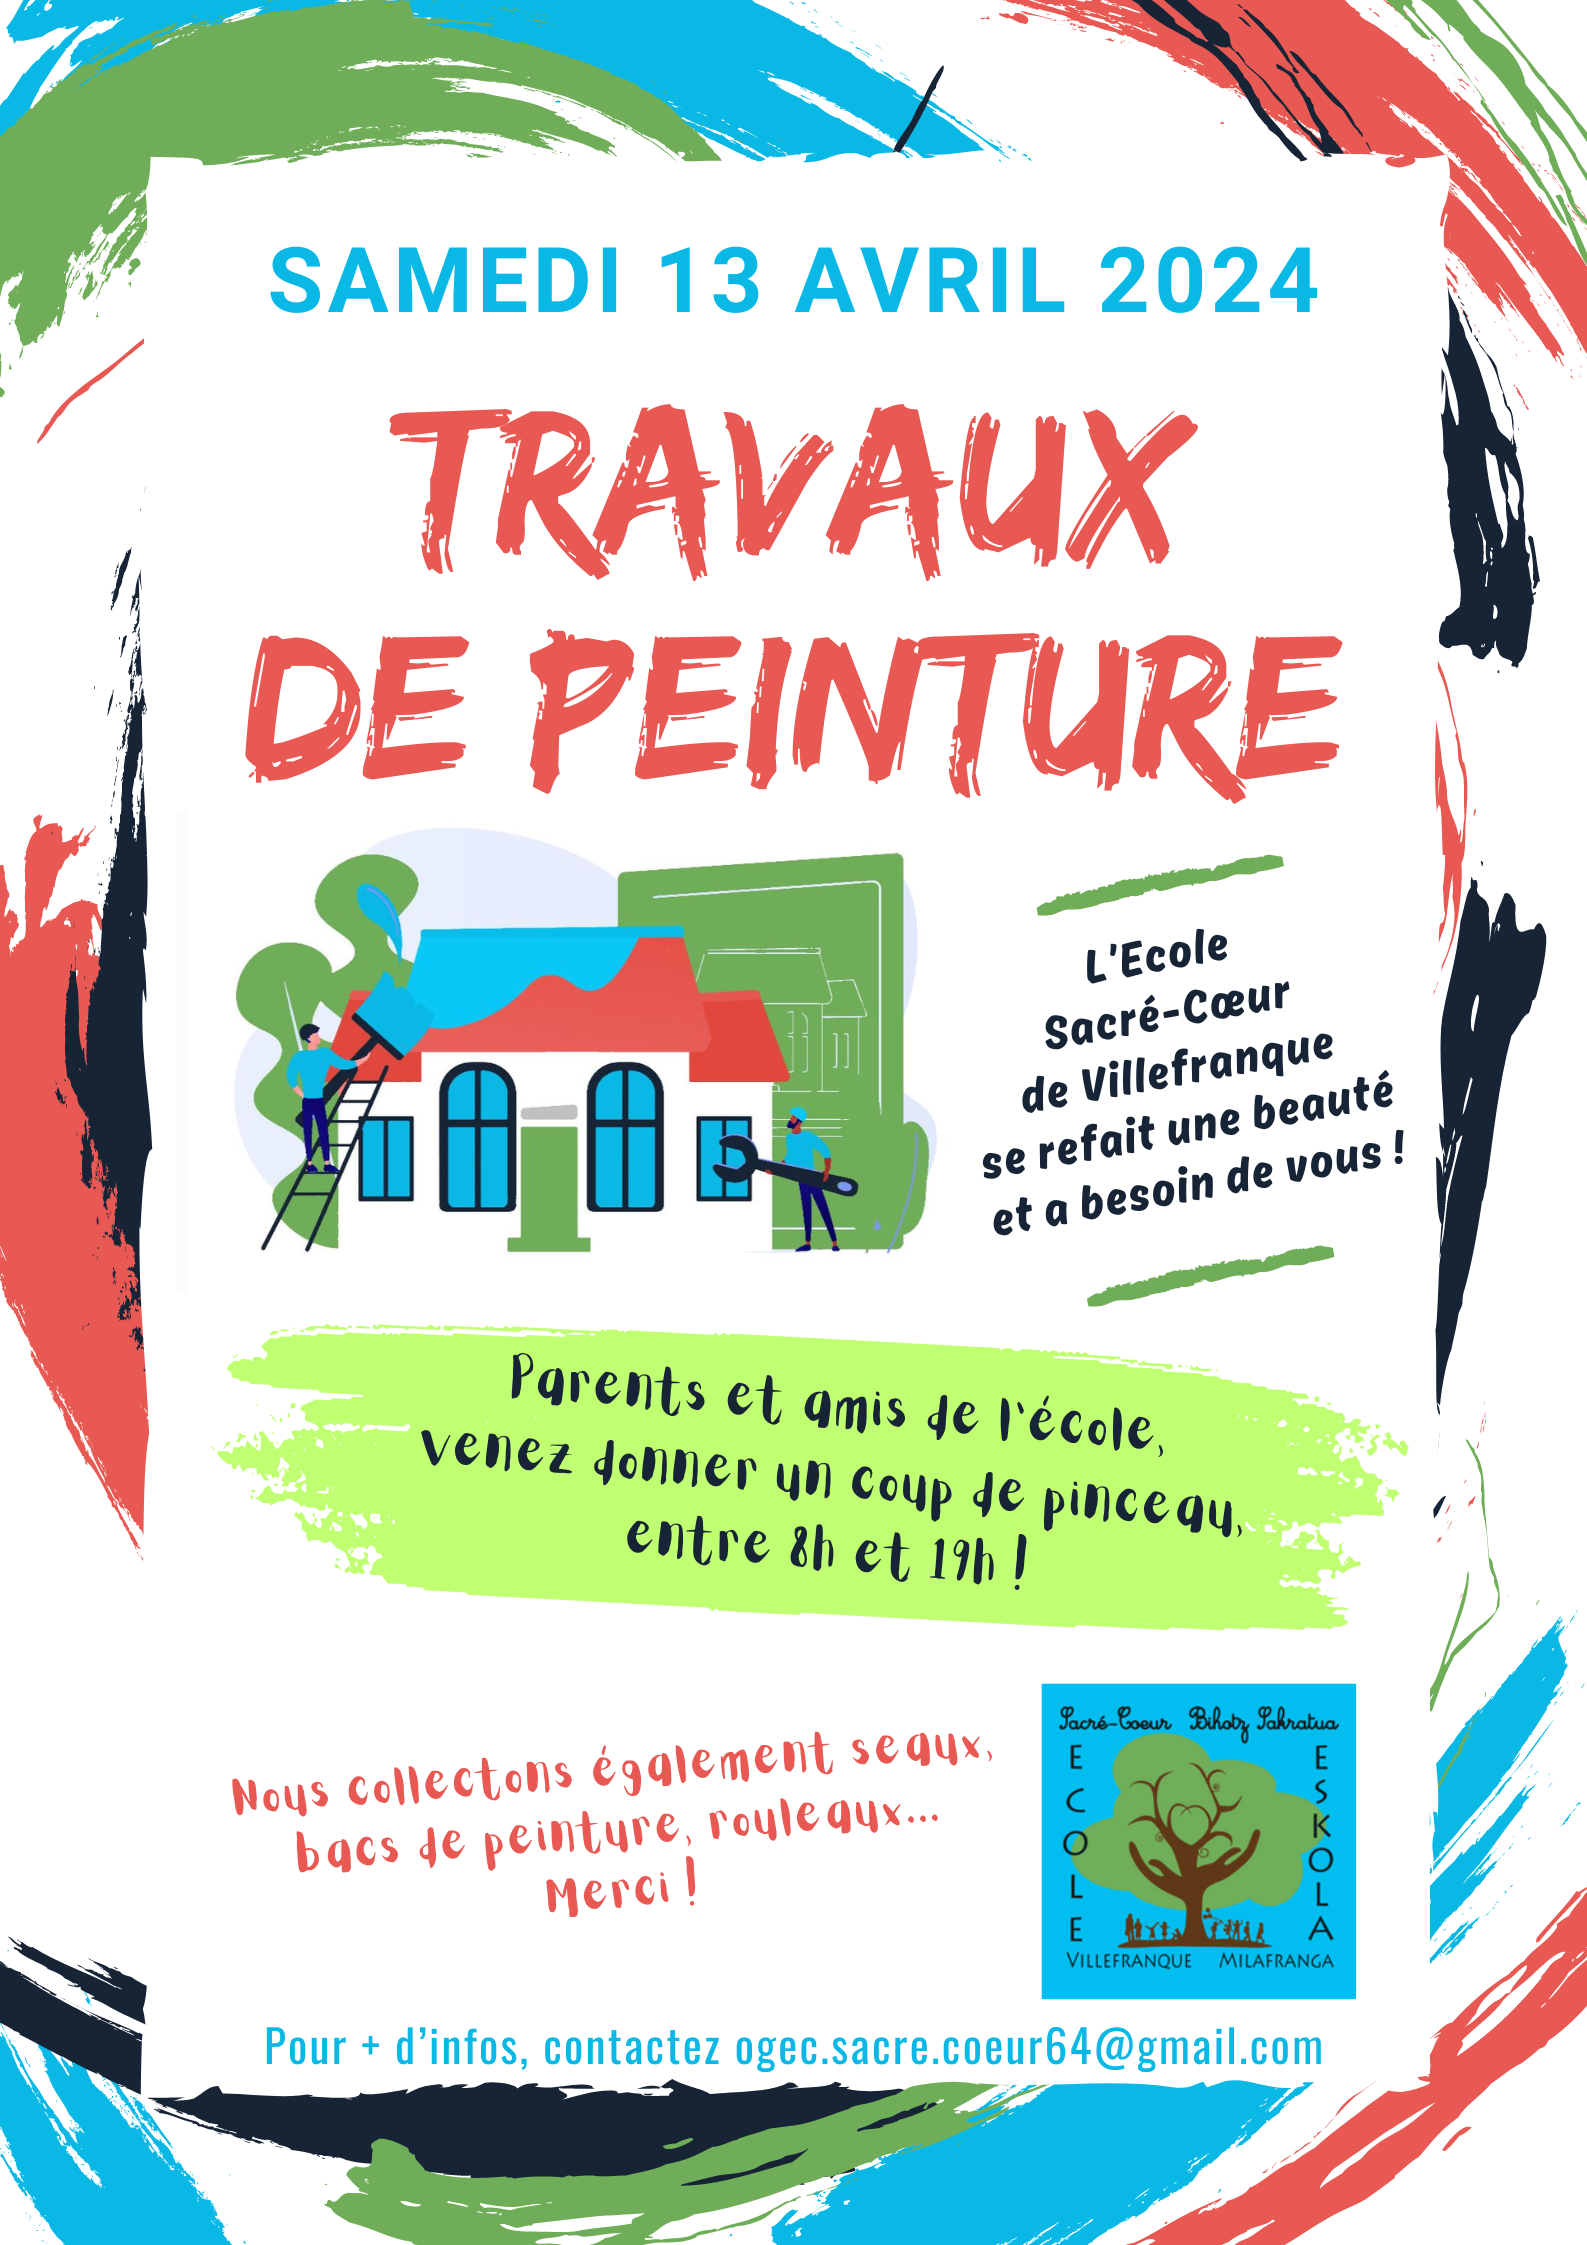 (c) Ecolesacrecoeur-villefranque.fr